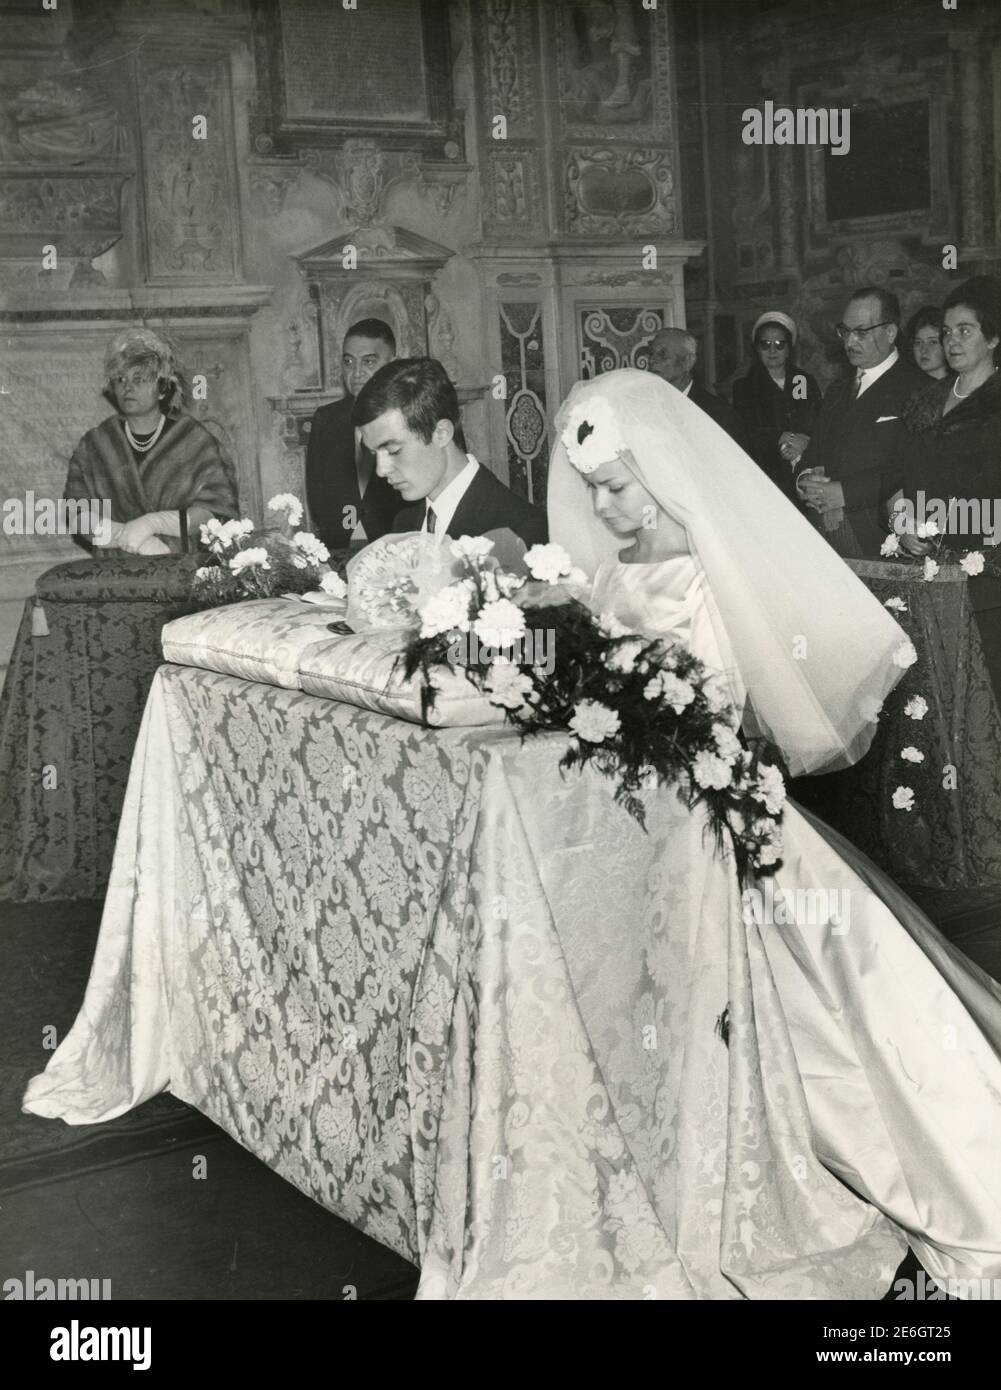 Mariée et marié au moment décisif du mariage de l'église, Italie des années 1950 Banque D'Images